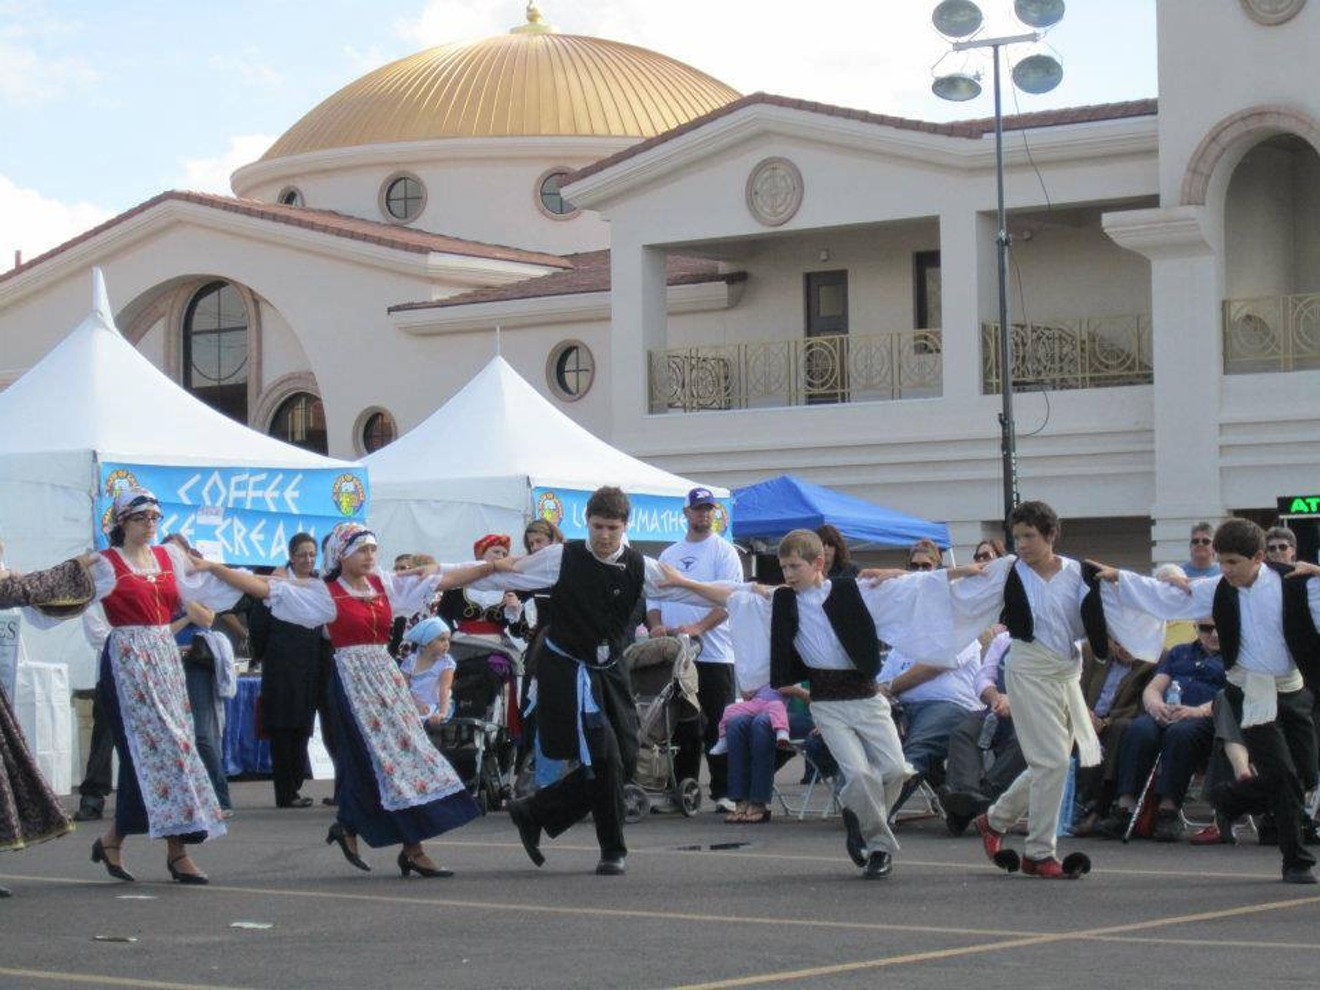 Greek dancers perform all weekend.